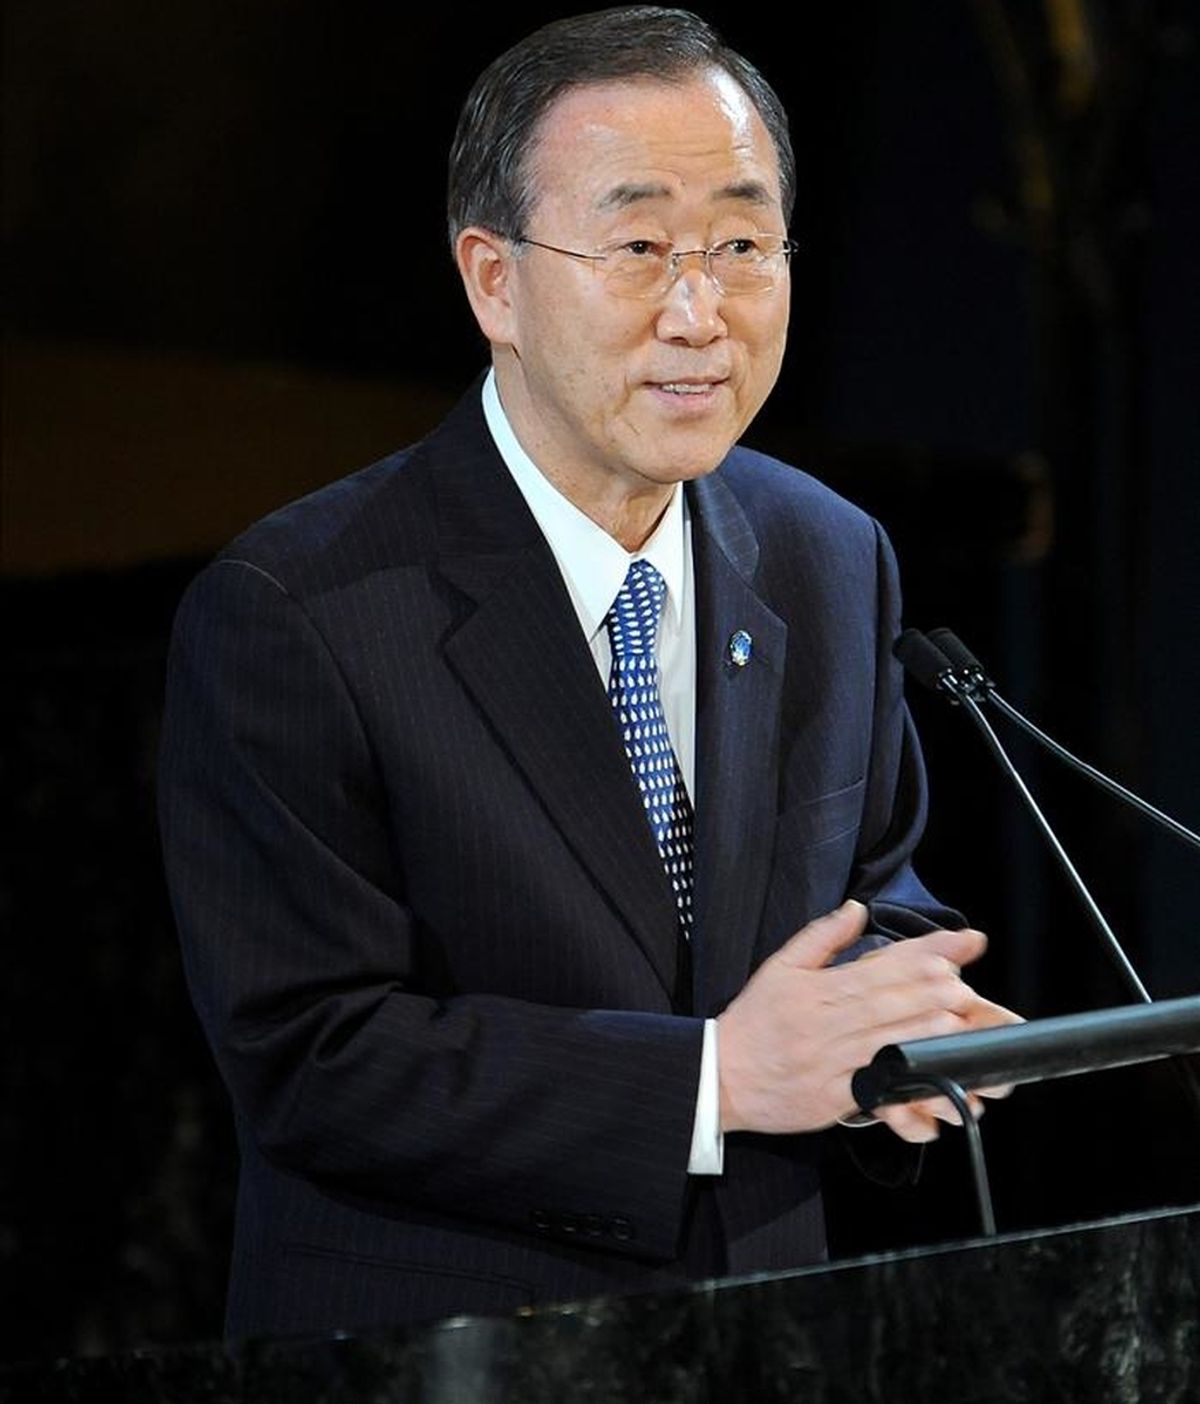 El Secretario General de la ONU, Ban Ki-moon, debe entregar ese documento al Consejo de Seguridad de Naciones Unidas antes de decidir sobre la renovación del mandato de la Misión de la ONU para el Referéndum en el Sahara Occidental (Minurso). EFE/Archivo